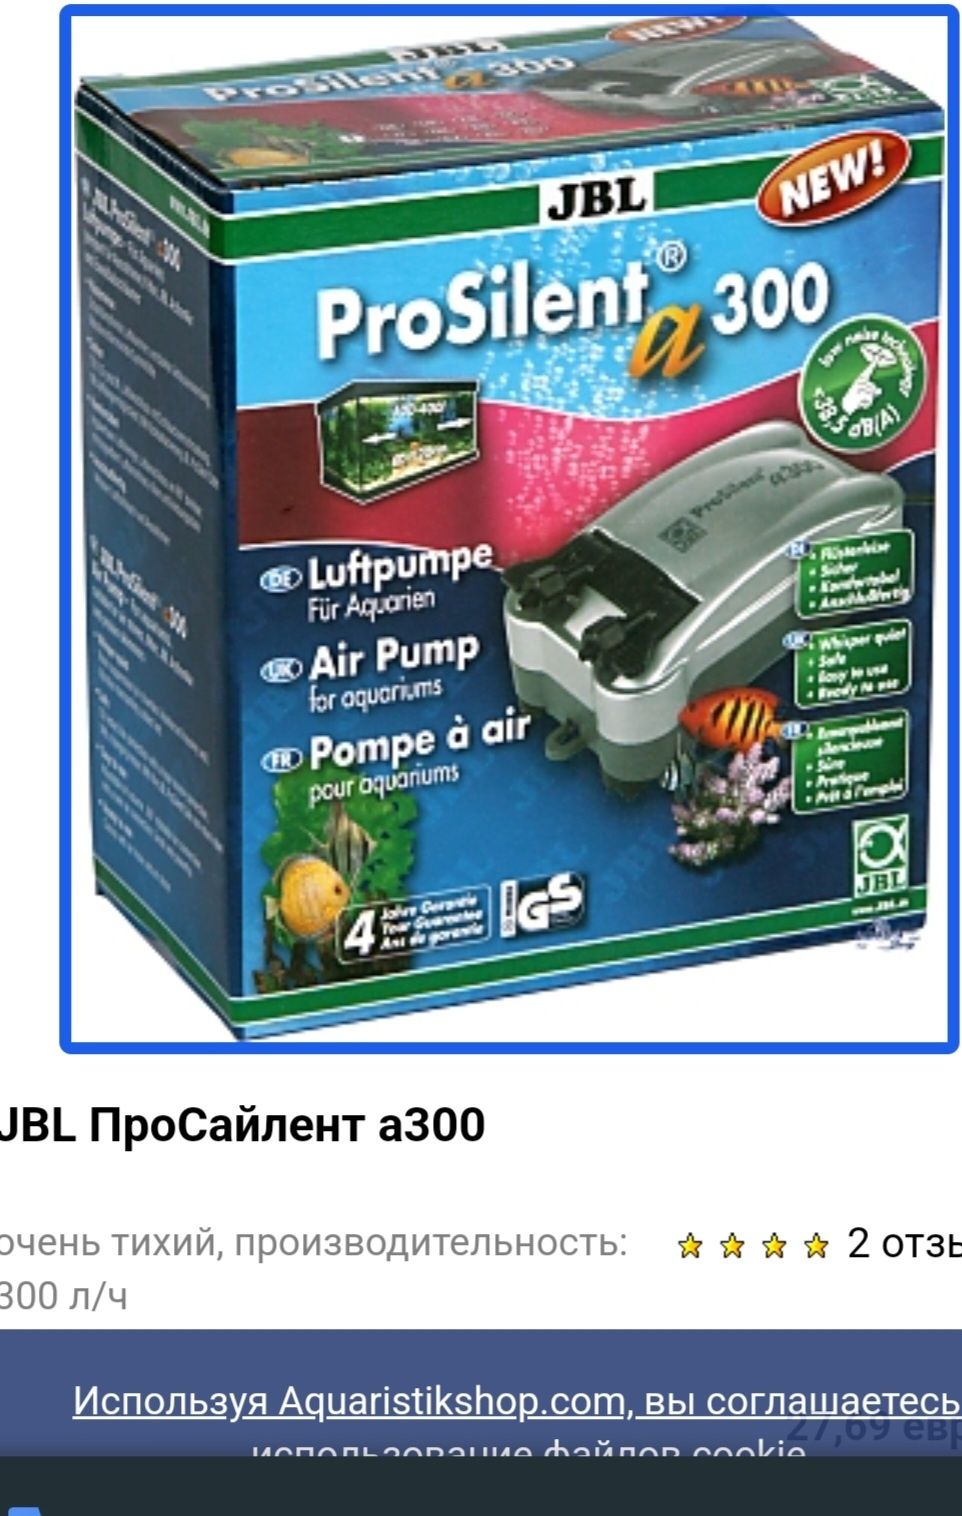 Супер тихий компрессор для аквариума JBL pro Silent 300